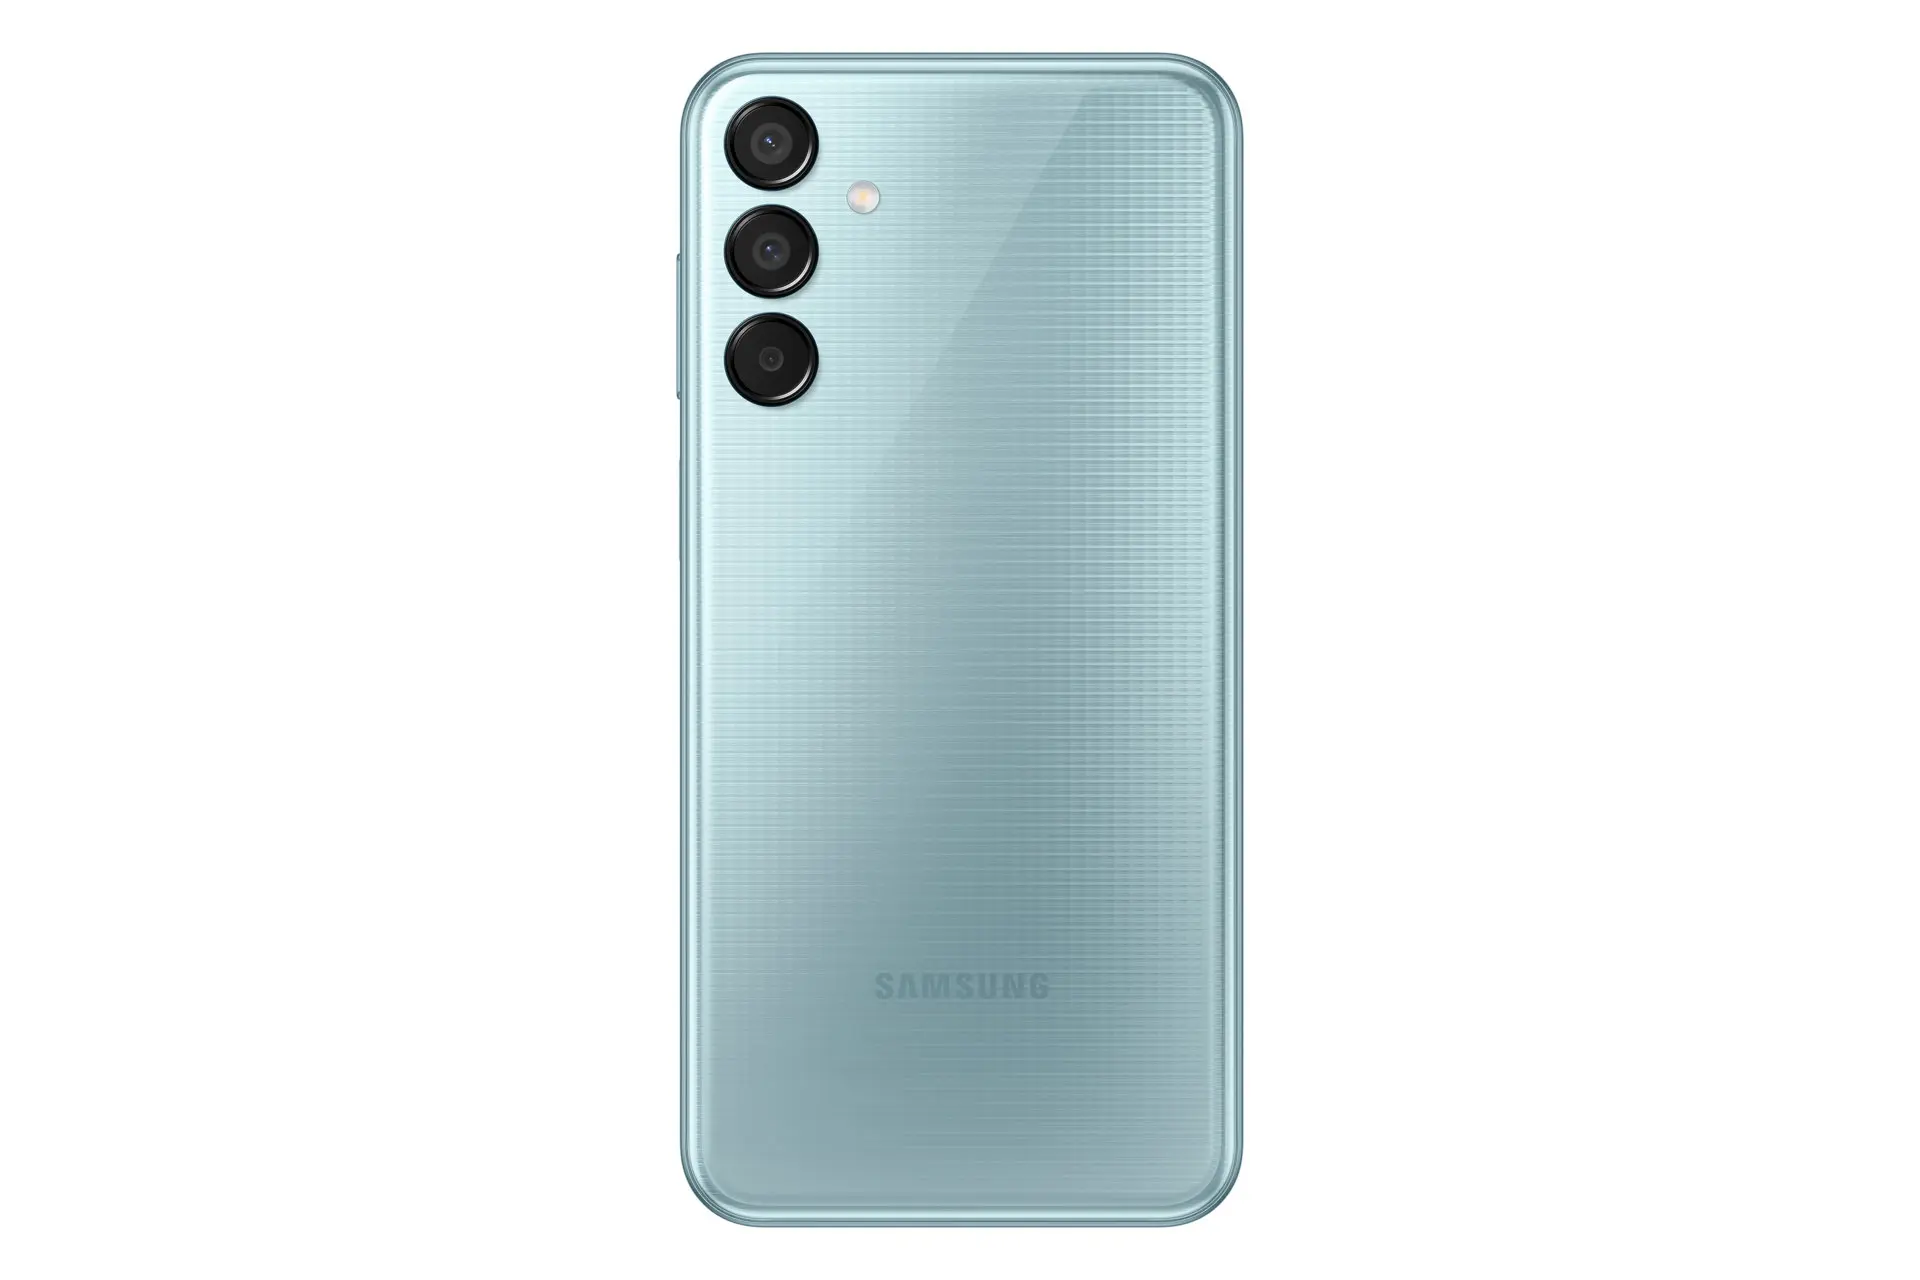 پنل پشت و چینش دوربین گوشی موبایل گلکسی M15 سامسونگ آبی روشن / Samsung Galaxy M15